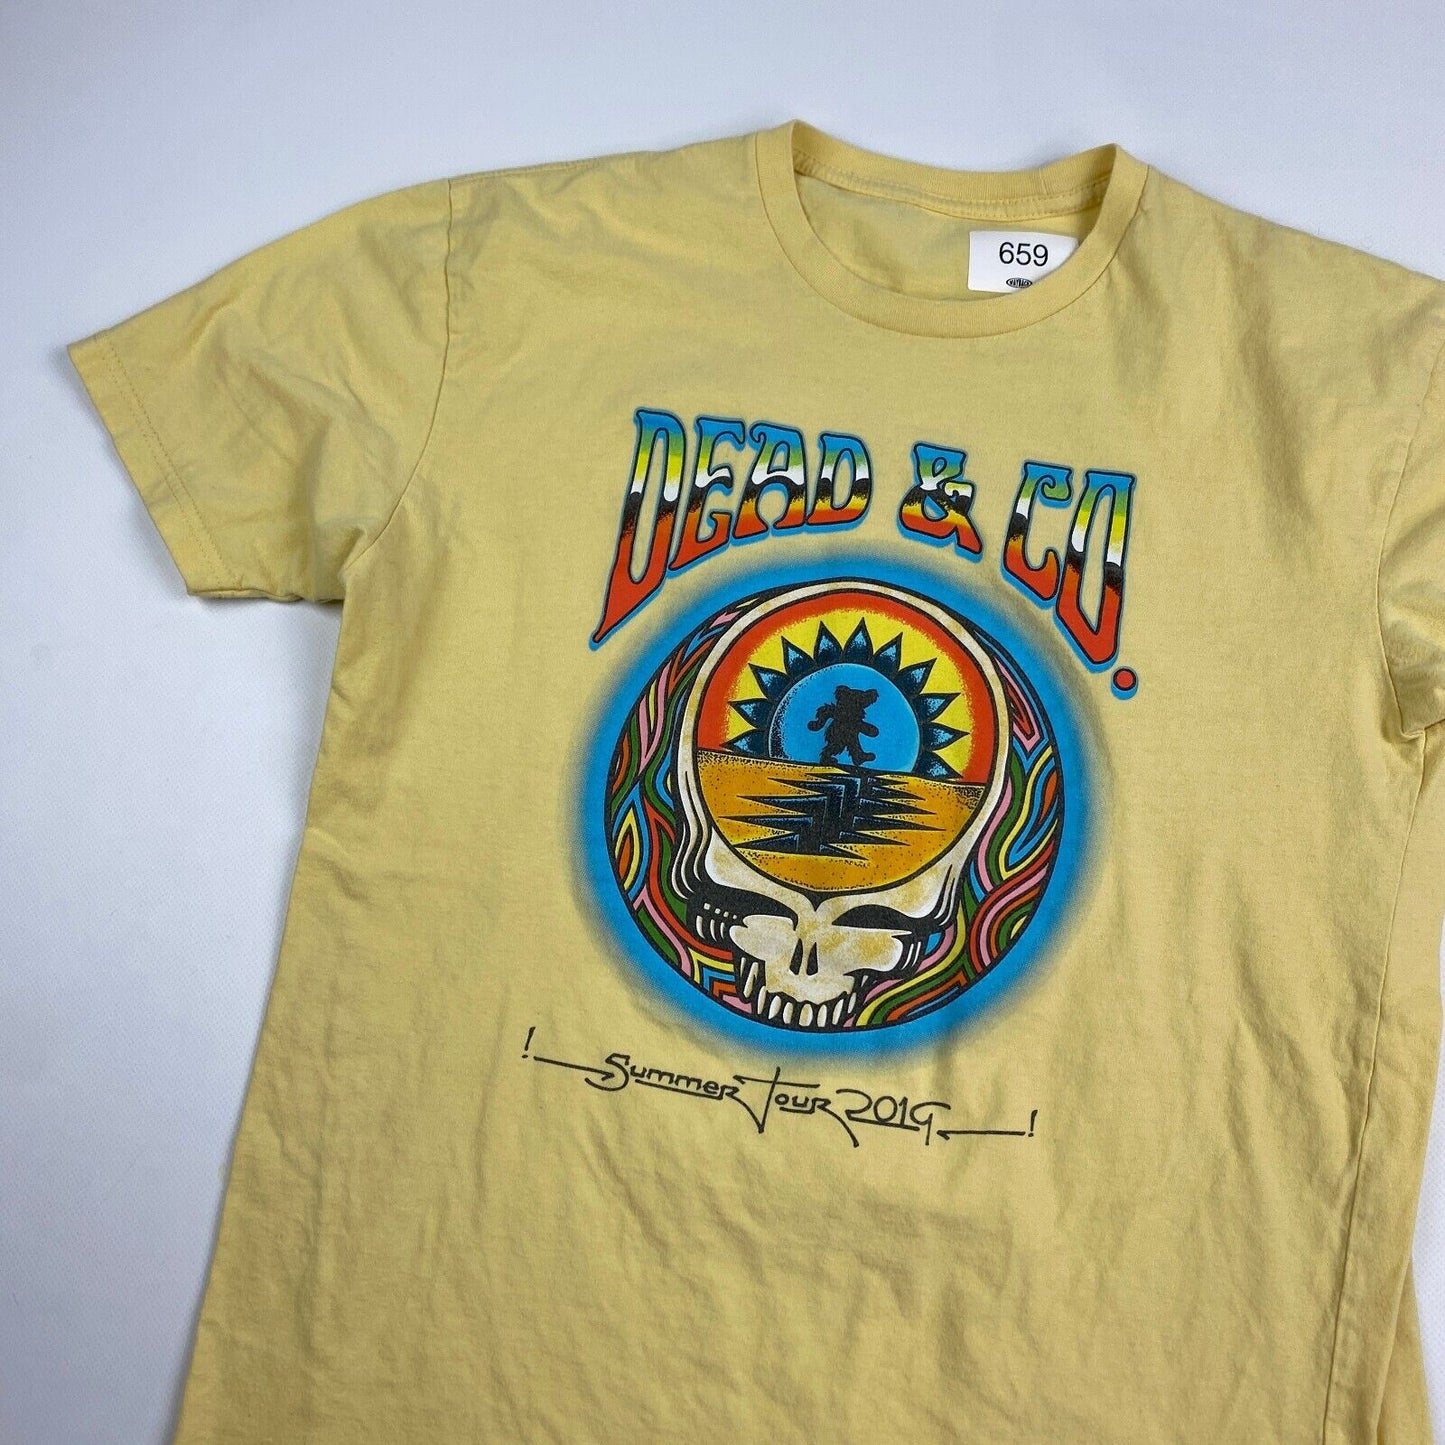 The Grateful Dead & Co Summer Tour Yellow Band T-Shirt sz Small Men